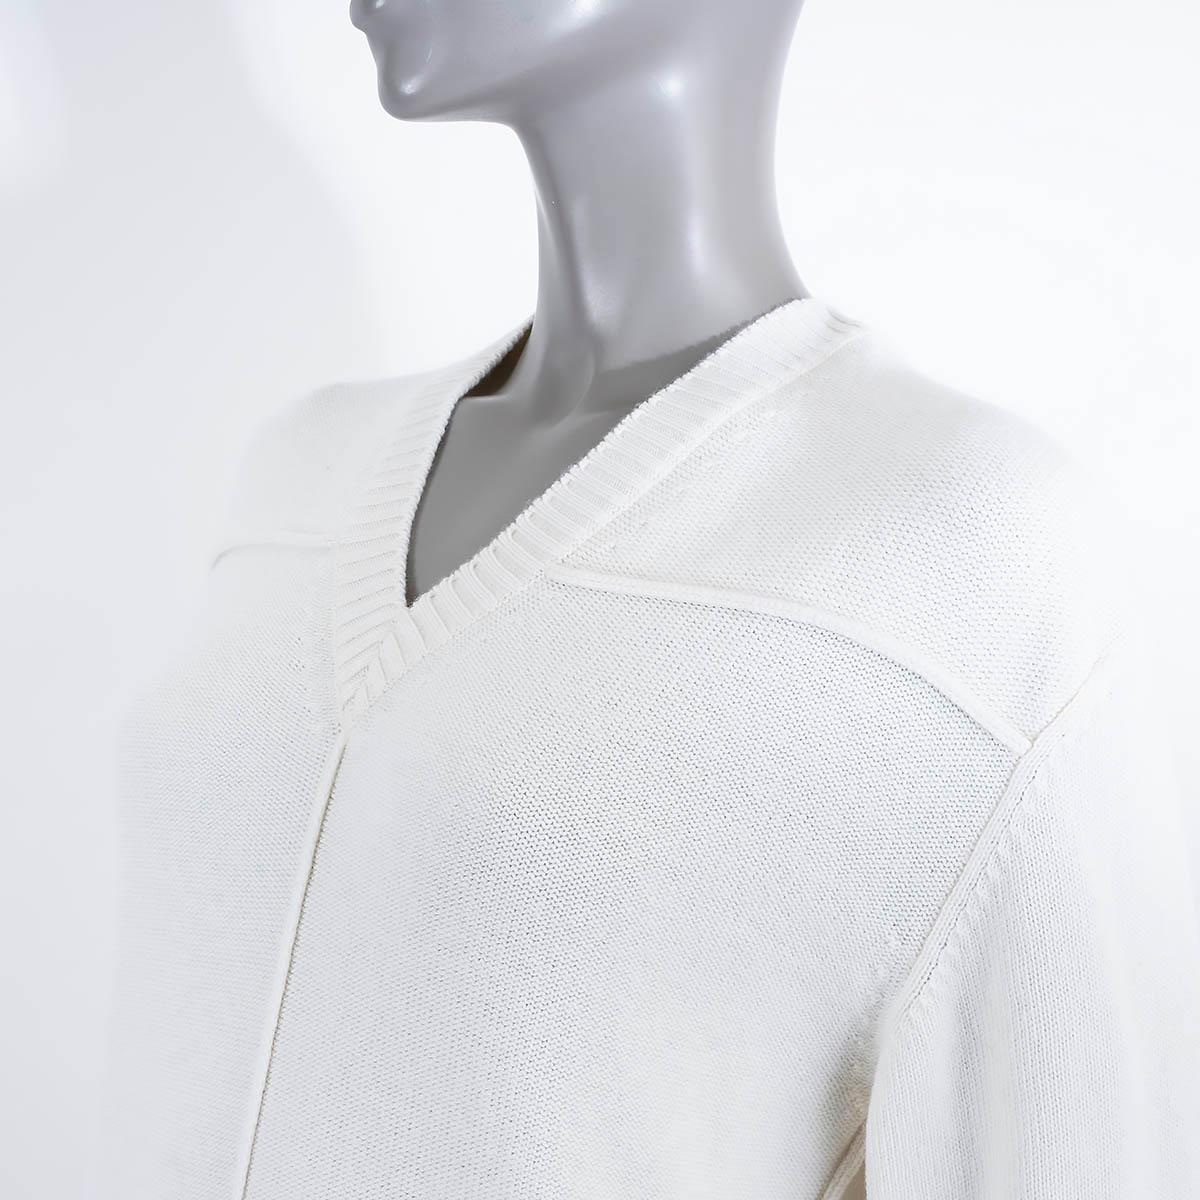 Women's HERMES white cashmere V-NECK KNIT Dress 38 S